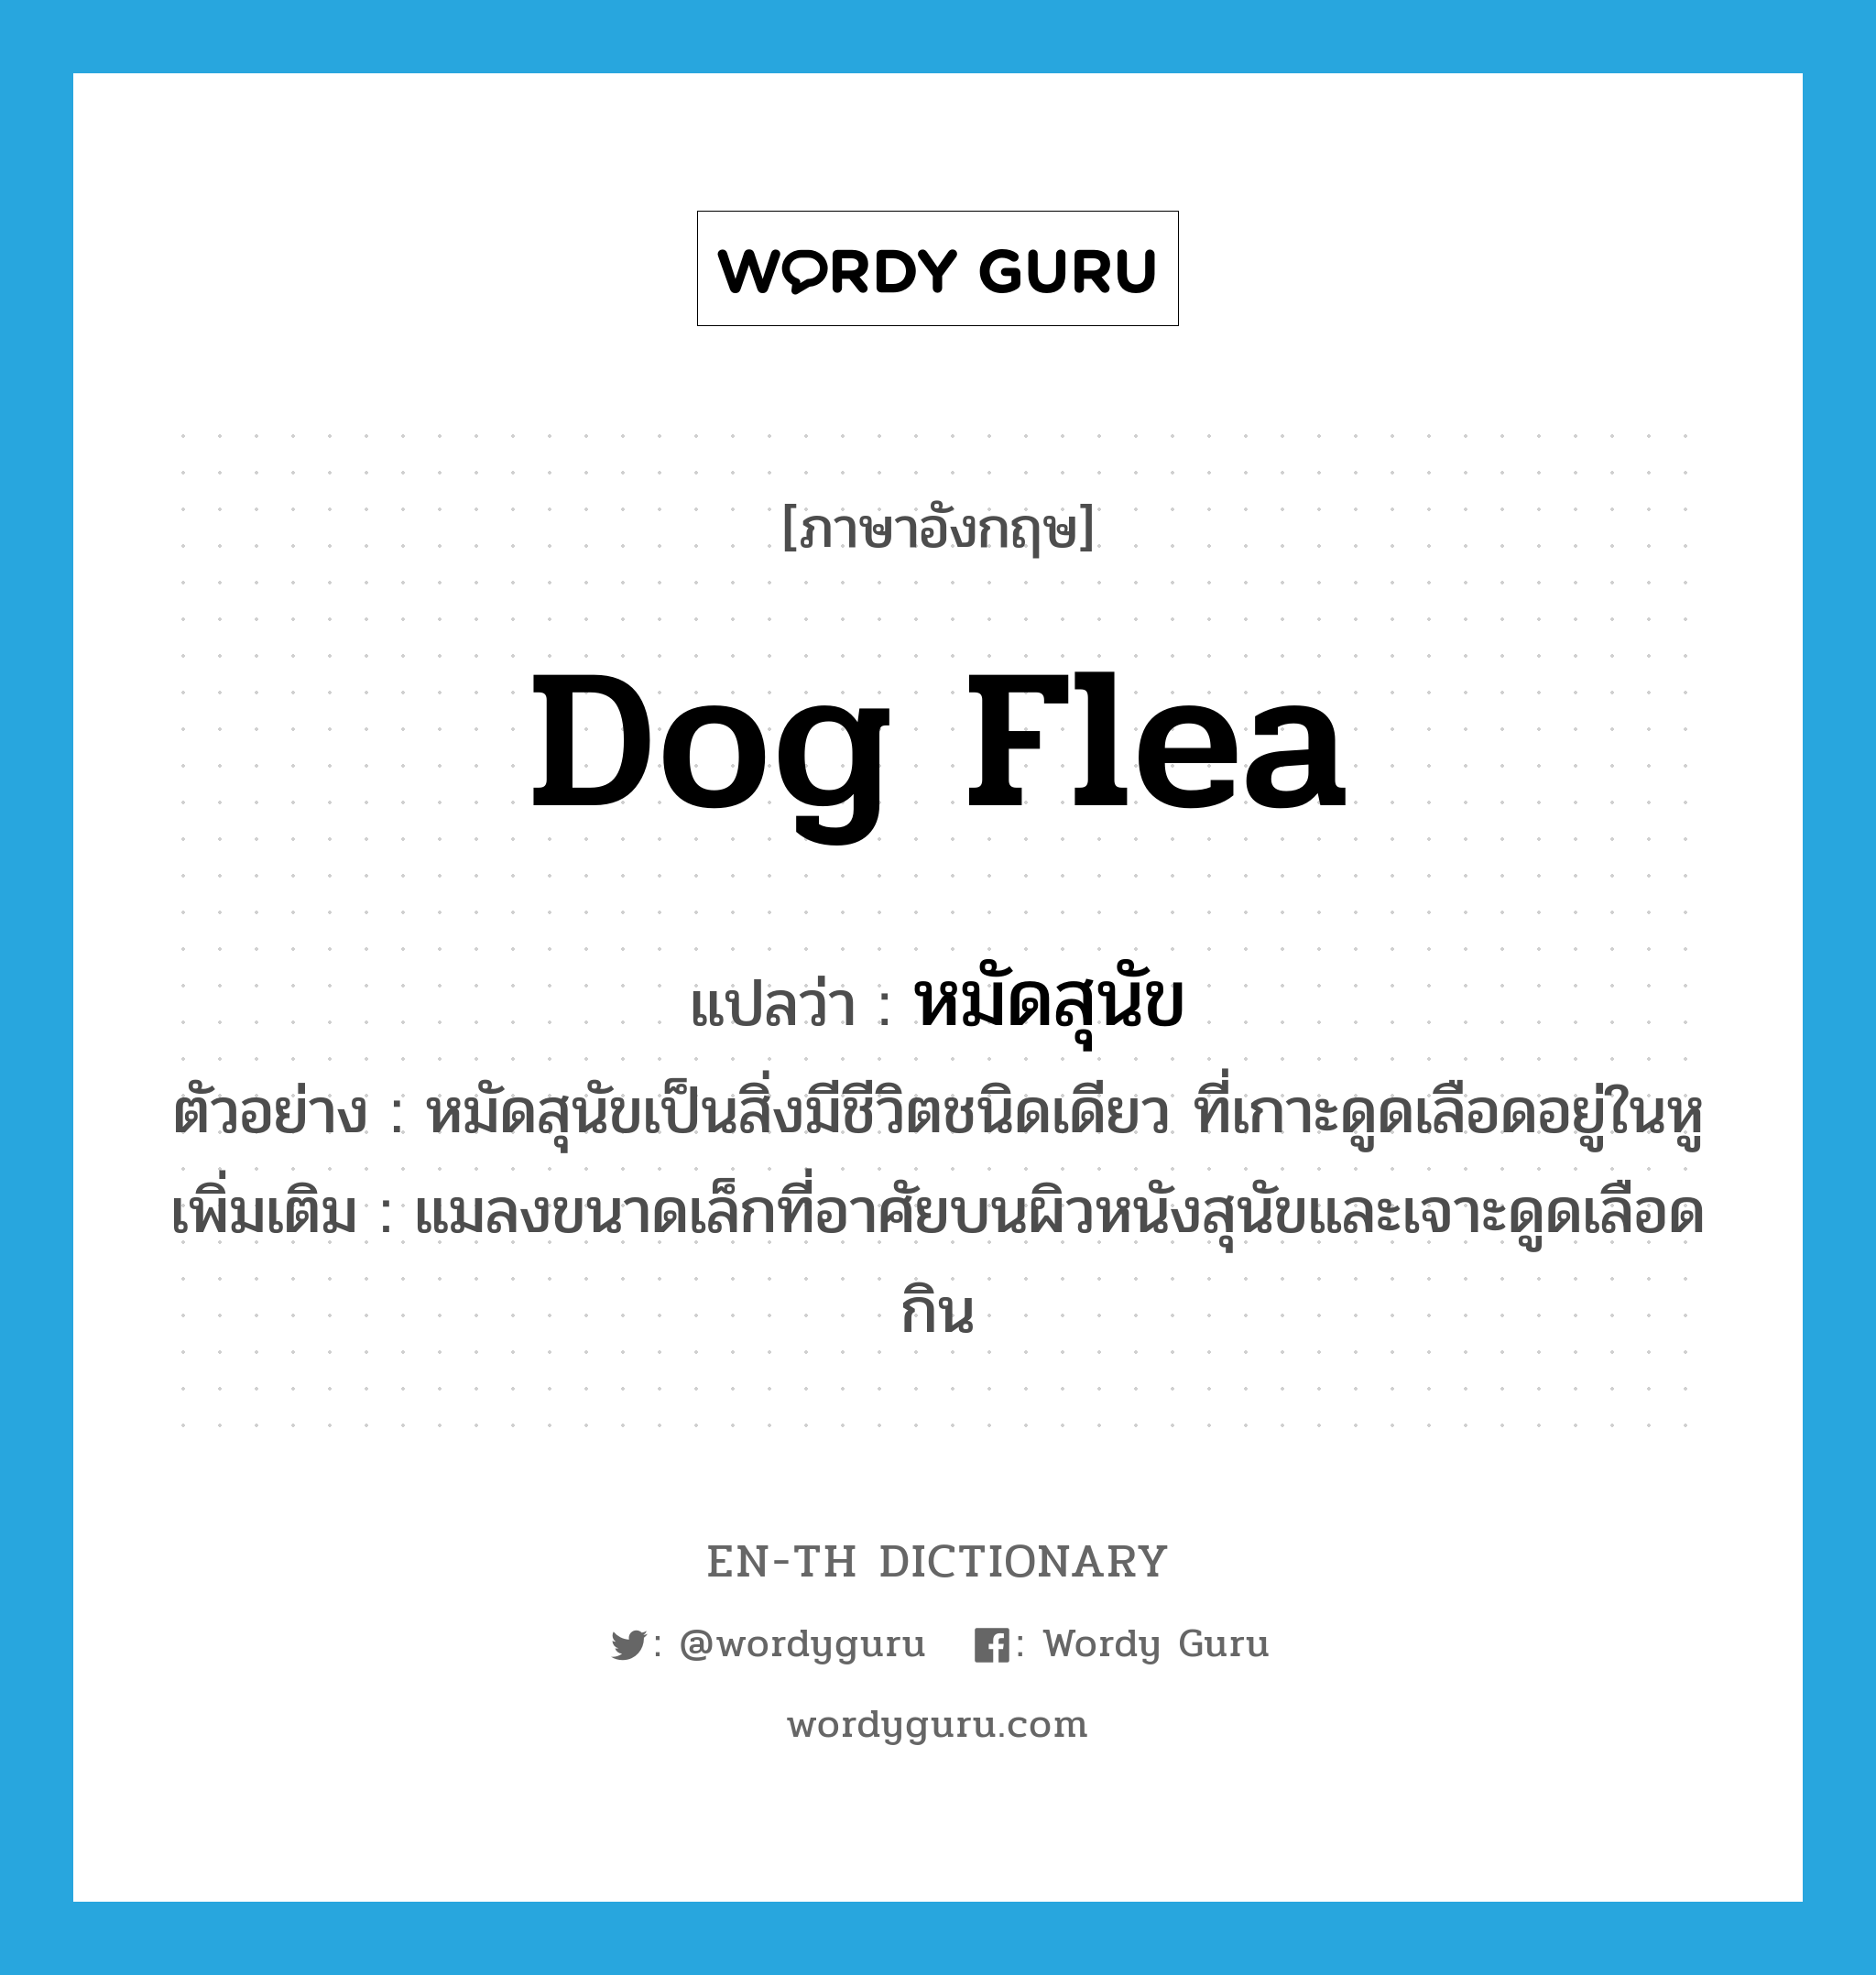 dog flea แปลว่า?, คำศัพท์ภาษาอังกฤษ dog flea แปลว่า หมัดสุนัข ประเภท N ตัวอย่าง หมัดสุนัขเป็นสิ่งมีชีวิตชนิดเดียว ที่เกาะดูดเลือดอยู่ในหู เพิ่มเติม แมลงขนาดเล็กที่อาศัยบนผิวหนังสุนัขและเจาะดูดเลือดกิน หมวด N